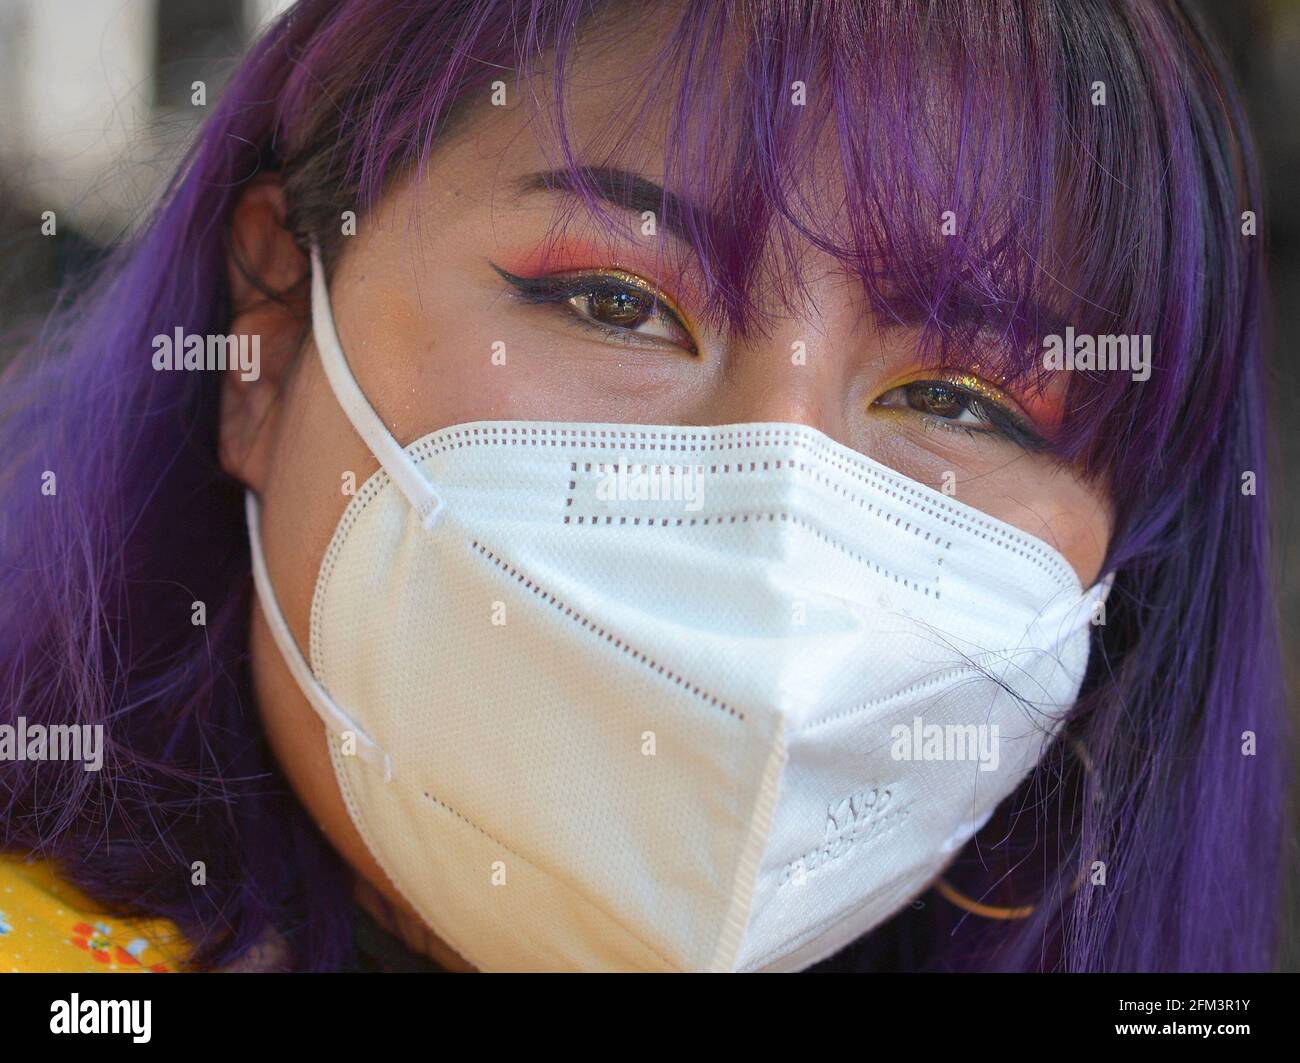 Une jeune femme indigène sud-américaine, avec un beau maquillage pour les yeux et des cheveux teints en bleu, porte un masque KN95 pendant la pandémie du coronavirus. Banque D'Images